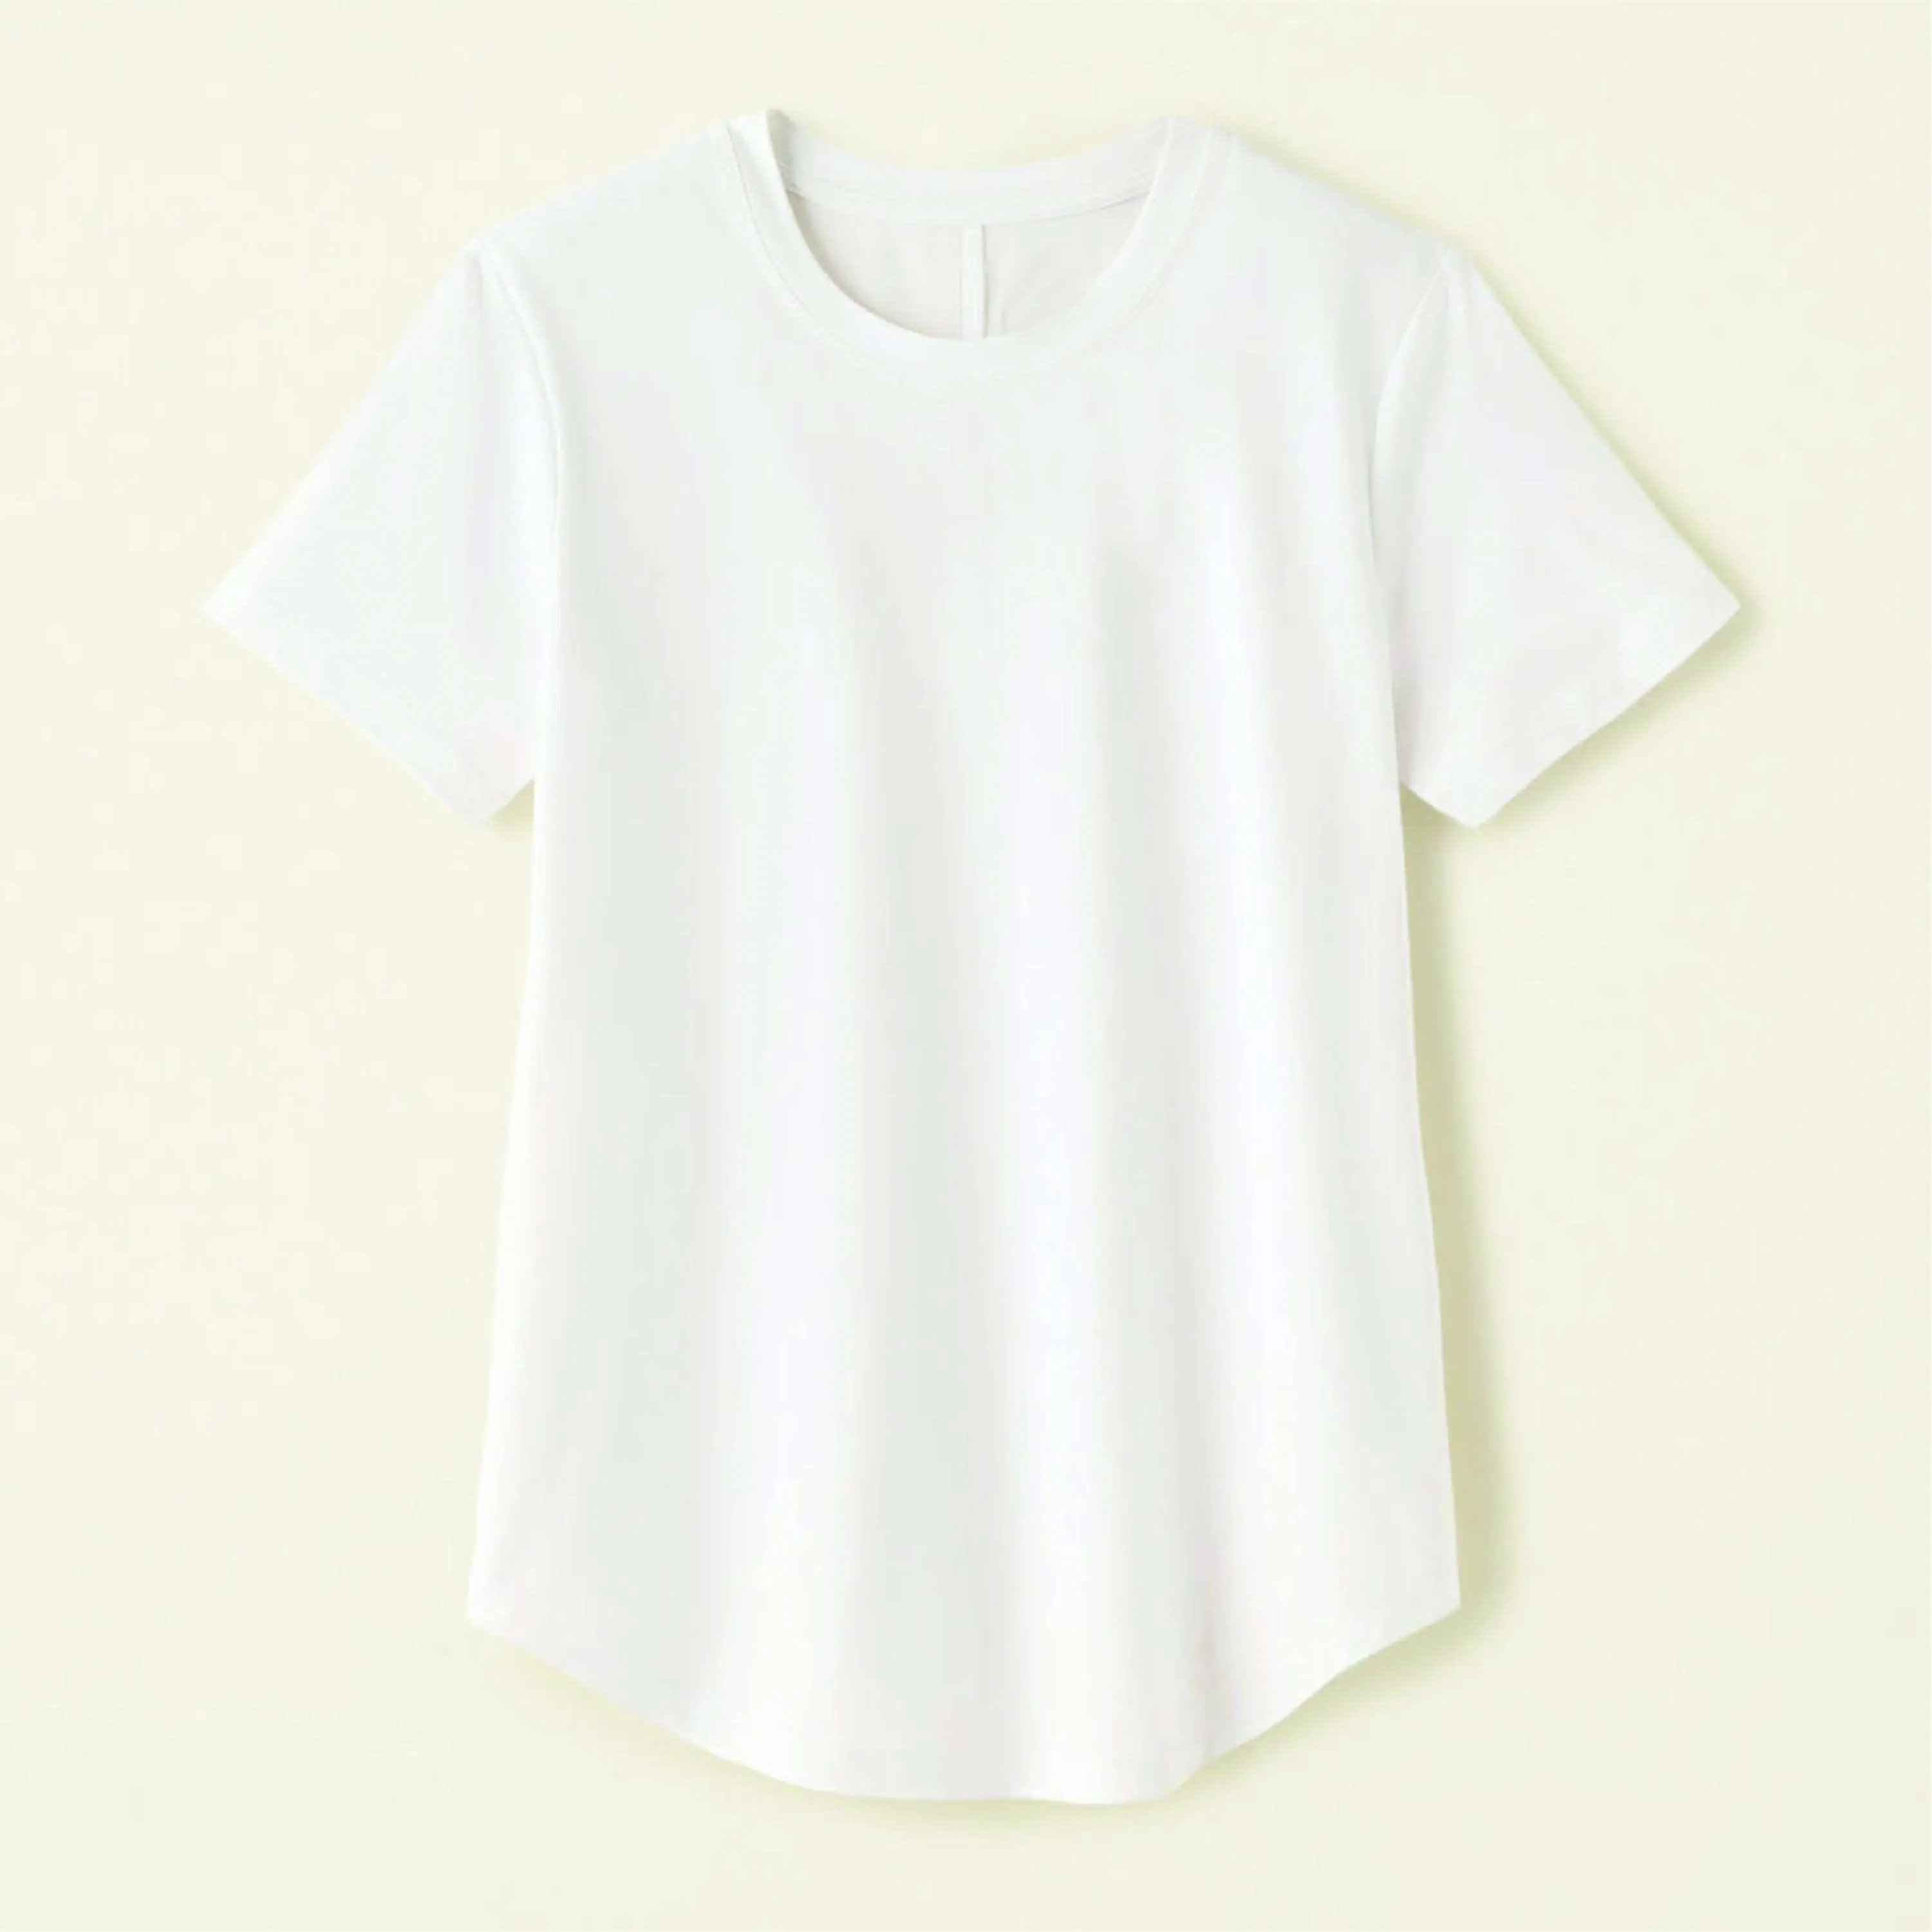 थोक वस्त्र कस्टम टी-शर्ट प्रिंटिंग डिजाइन महिलाओं के लिए उच्च गुणवत्ता वाली टी शर्ट